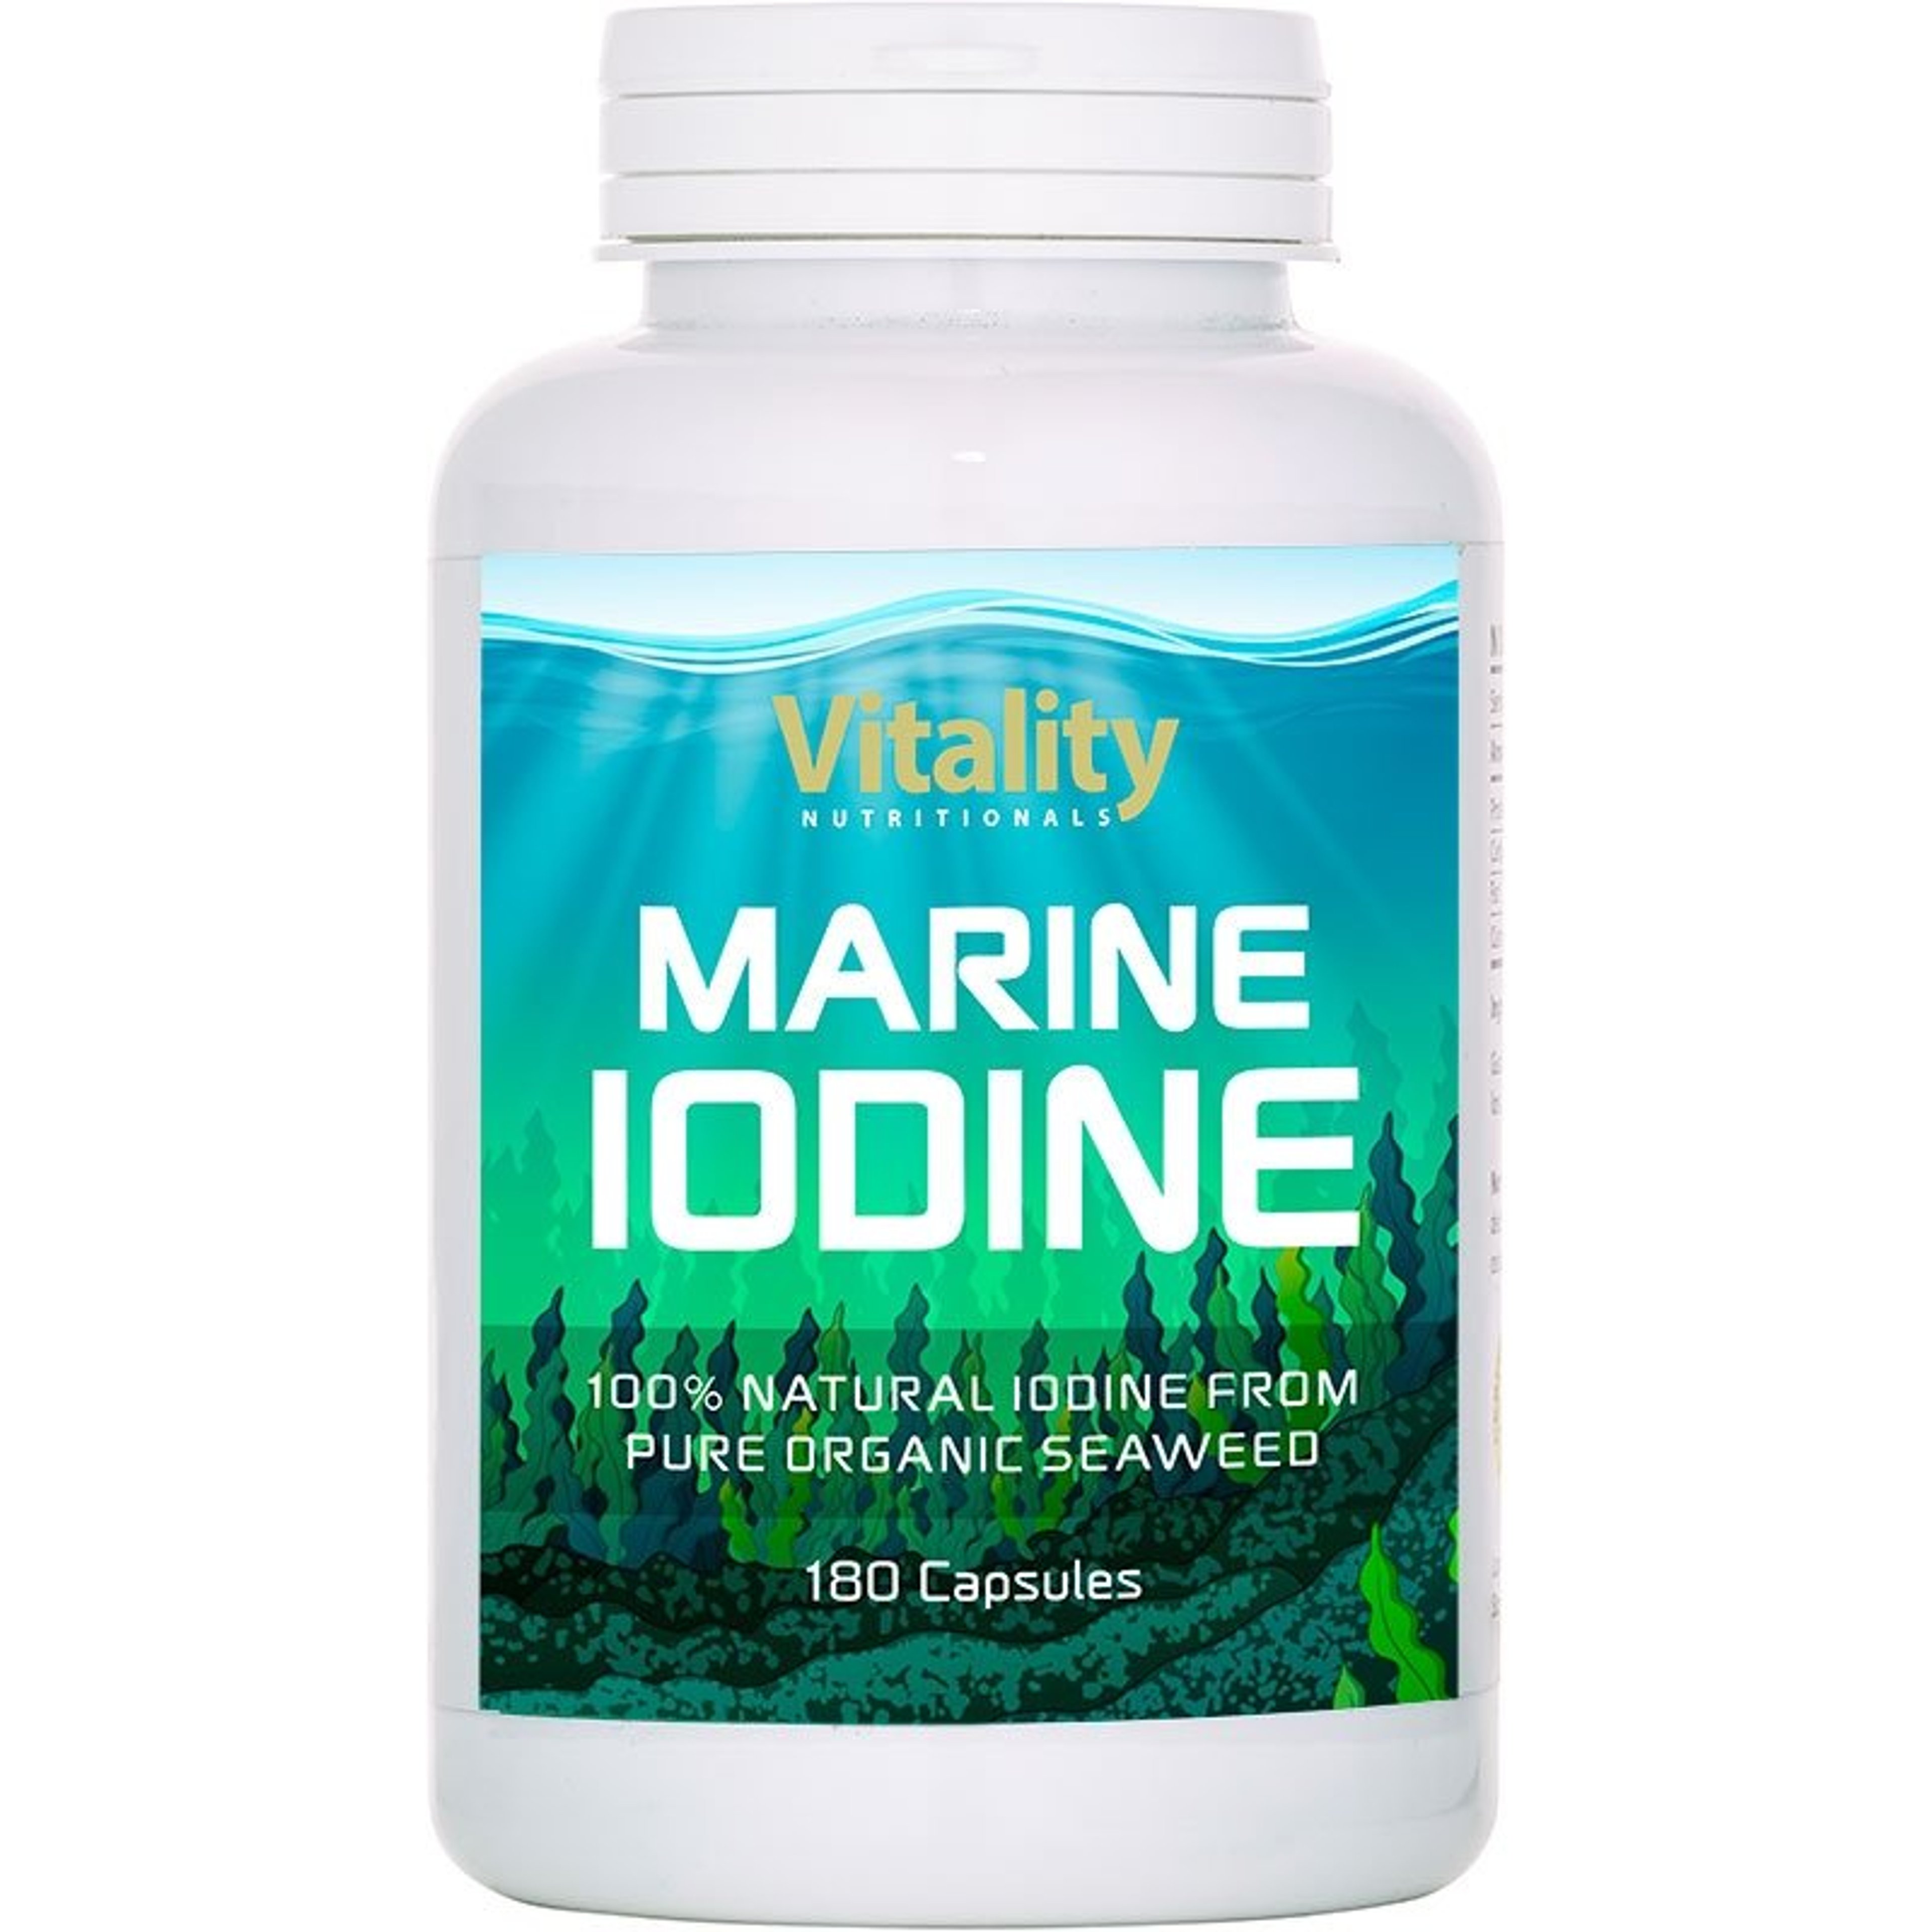 Marine Iodine - 180 capsules